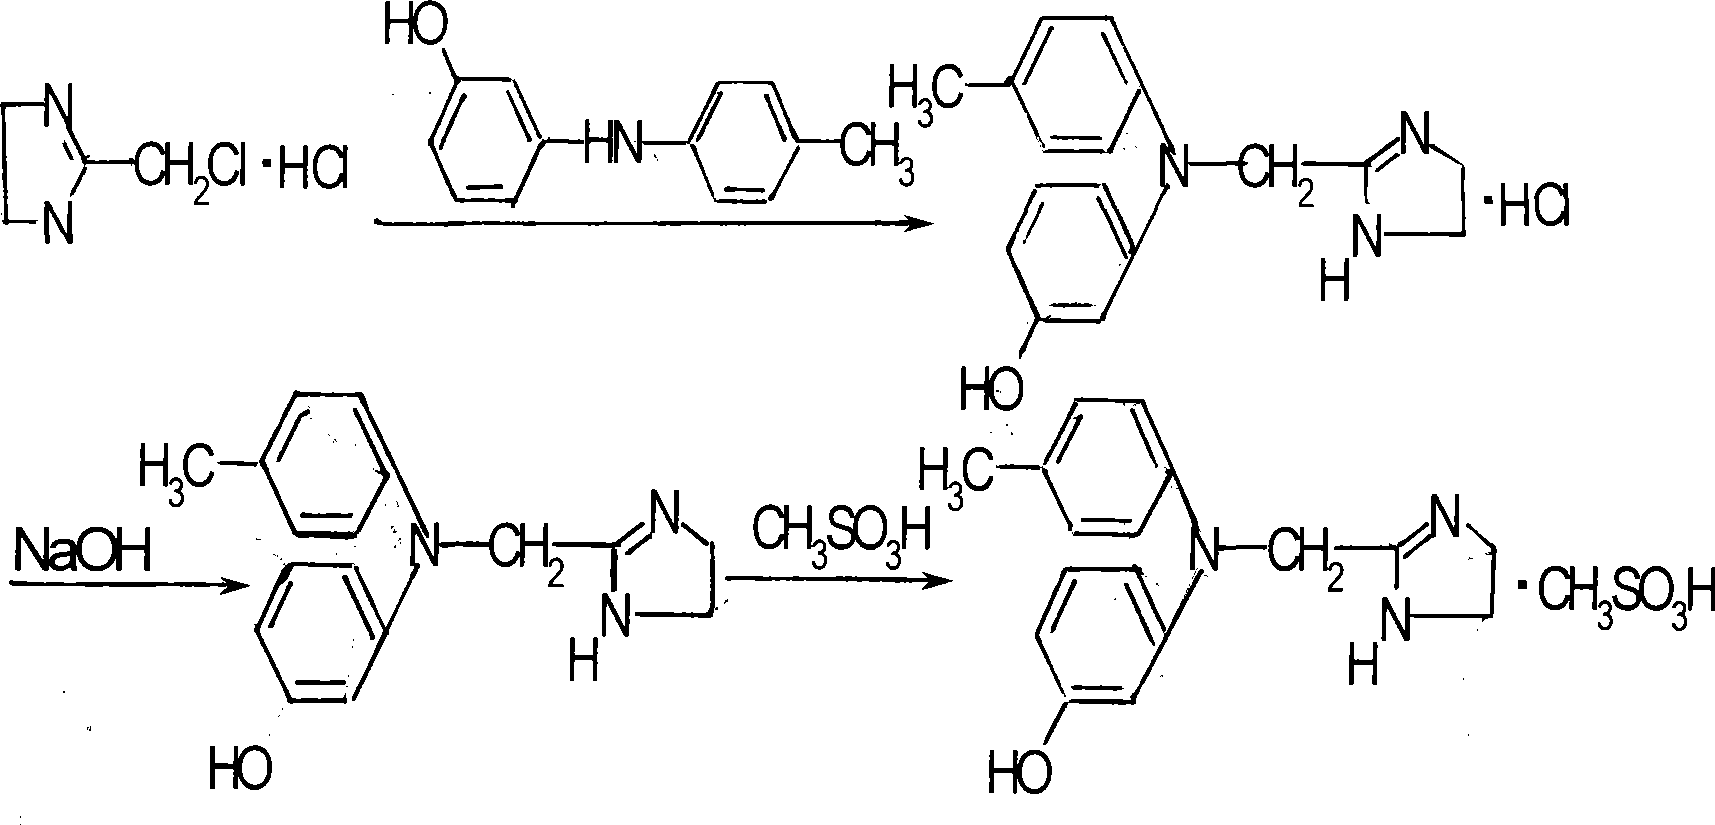 Method for synthesizing phentolamine mesylate